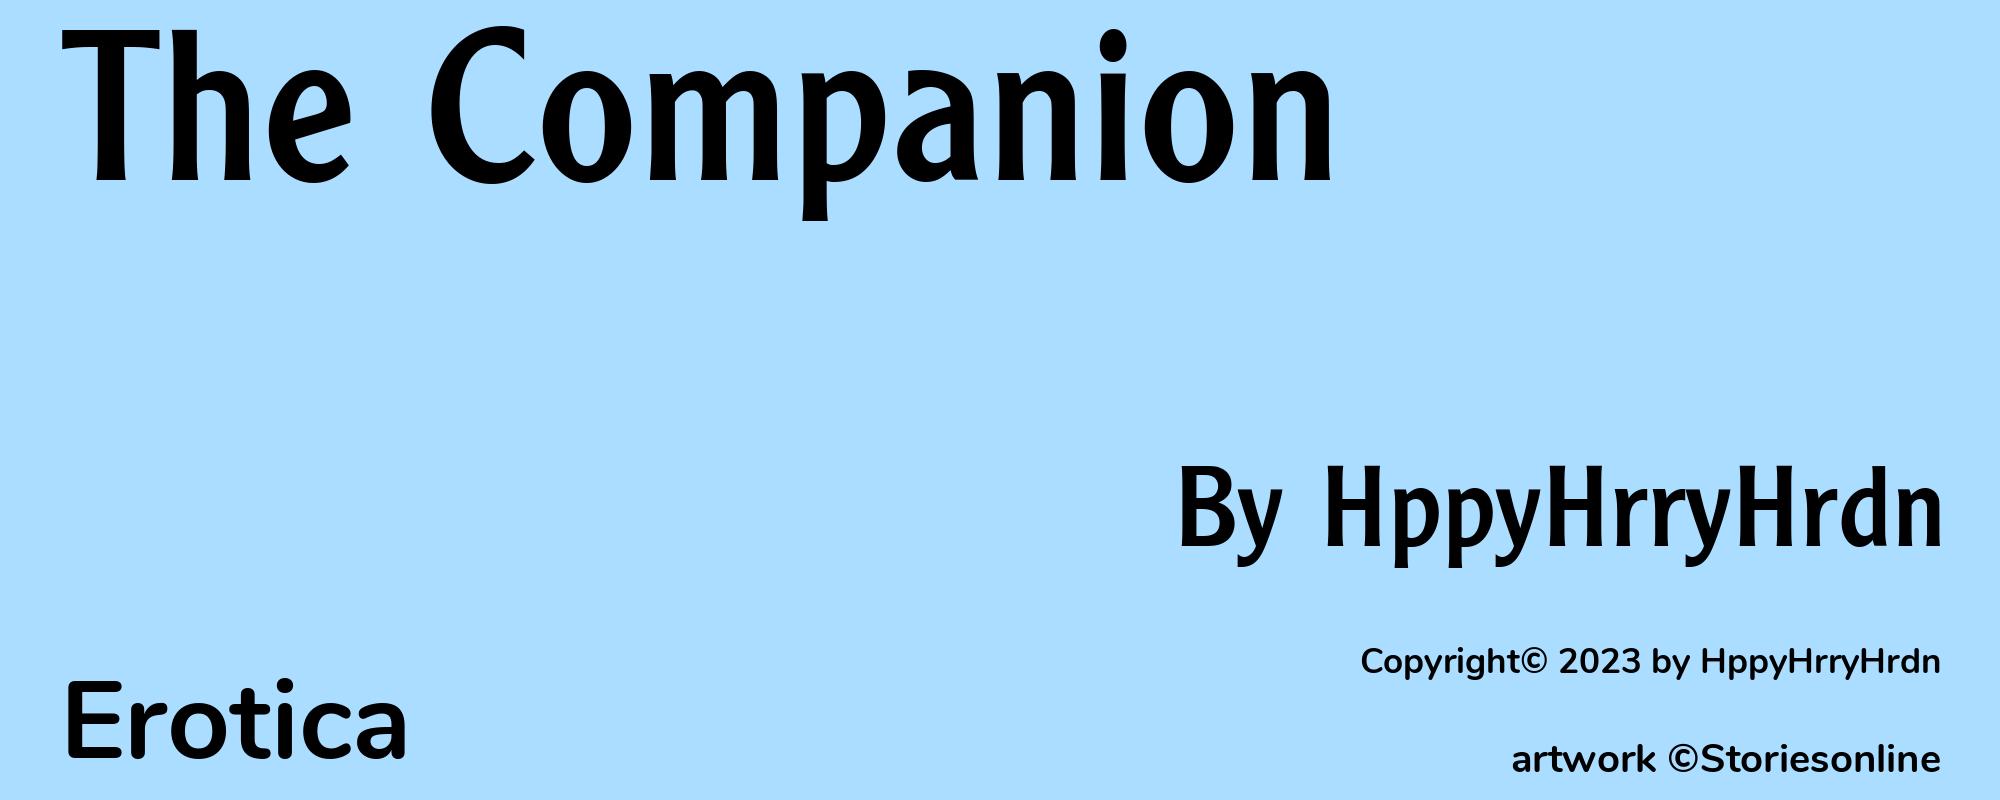 The Companion - Cover